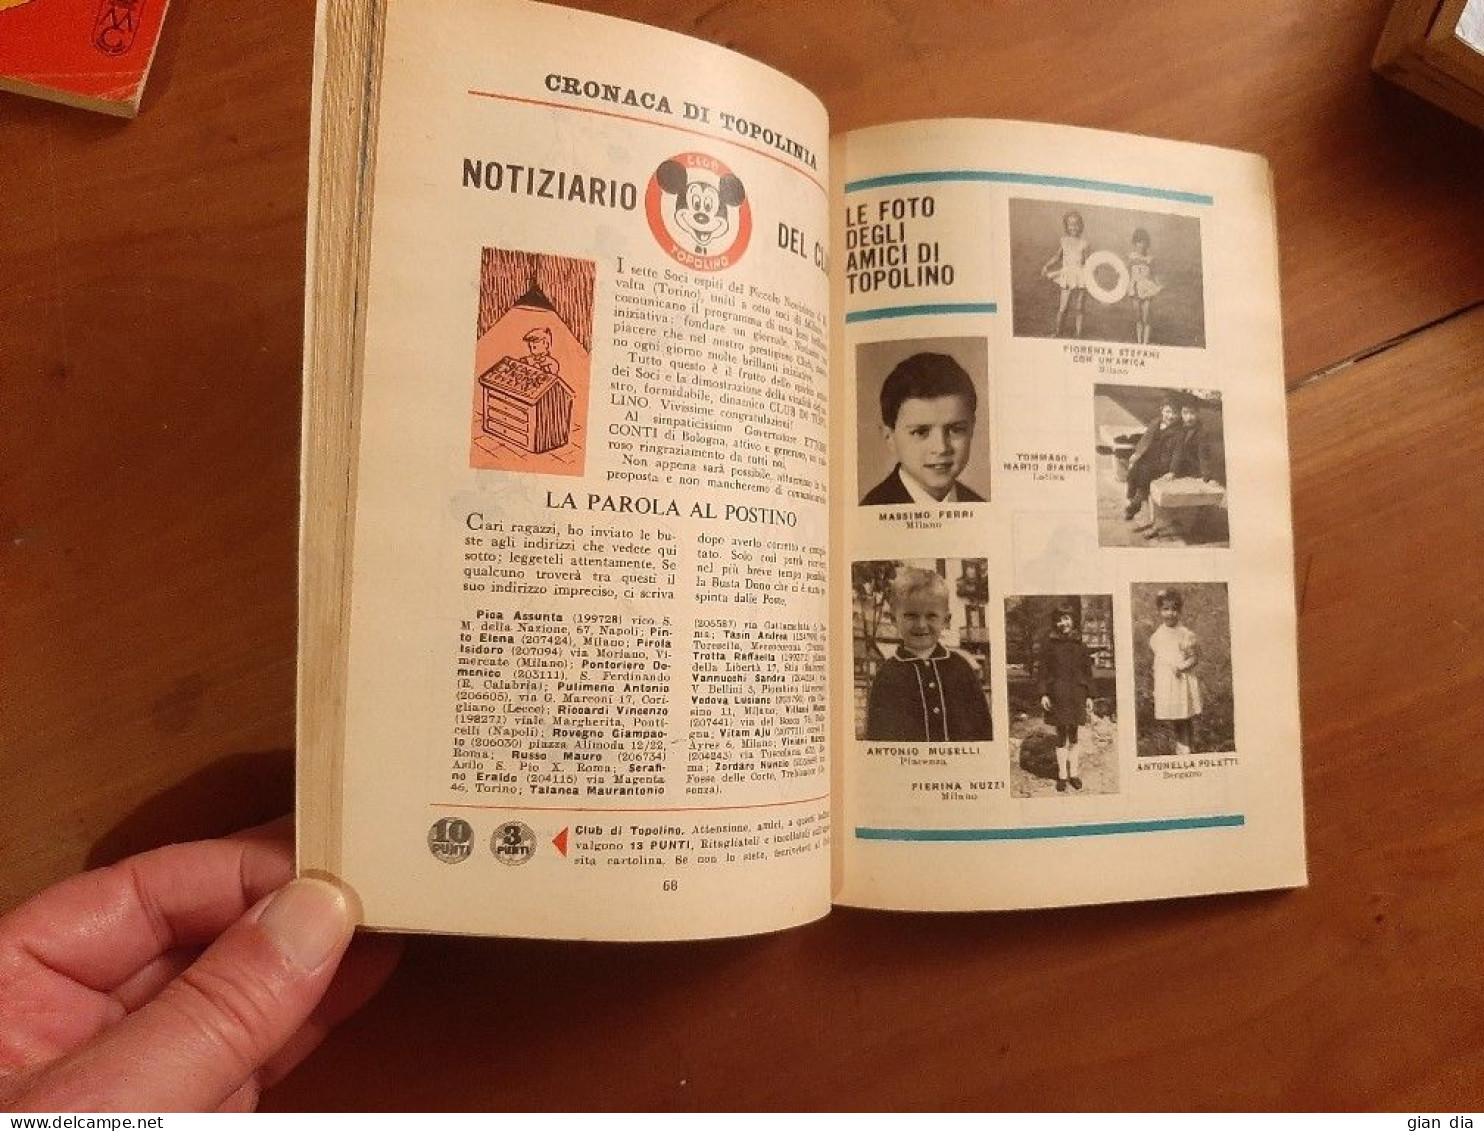 TOPOLINO Ed.Mondadori. Lotto di 8 Segmento 327 – 518. 1962-65. Ottimi. Figurine.